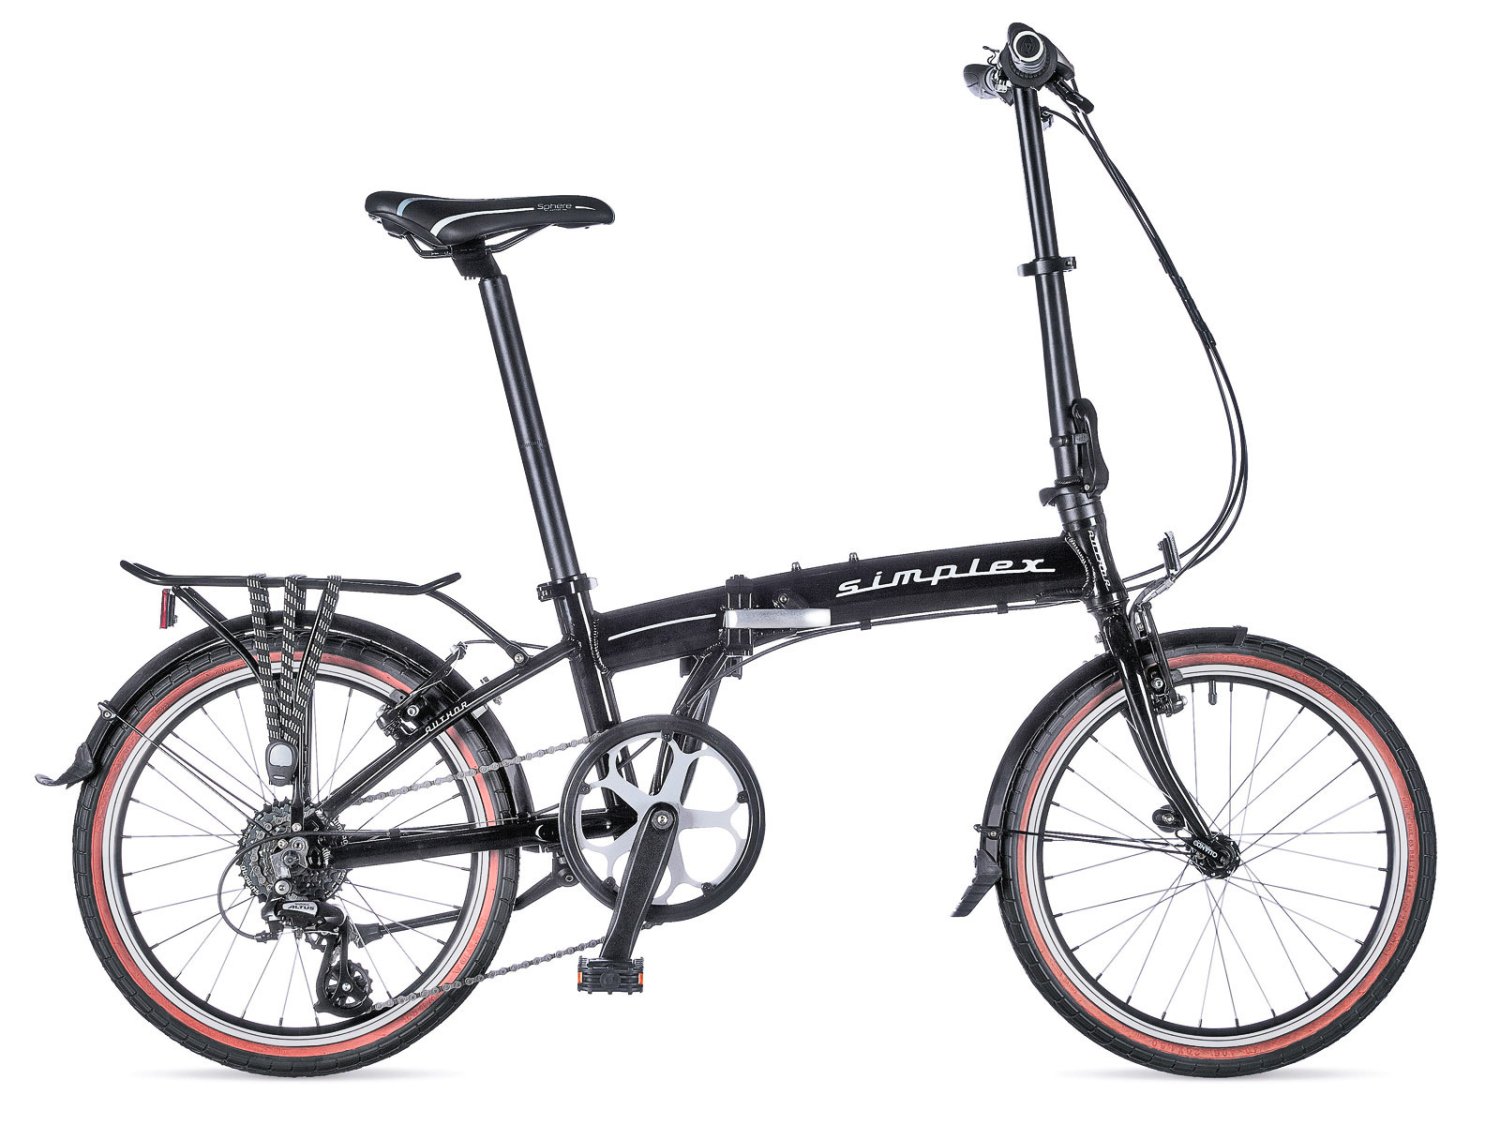 Рама велосипедная AUTHOR, алюминиевая, складная, с замком, для Simplex 2015, черная, 8-2015001 рама велосипедная author алюминиевая складная с замком для simplex 2015 белая 8 2015002